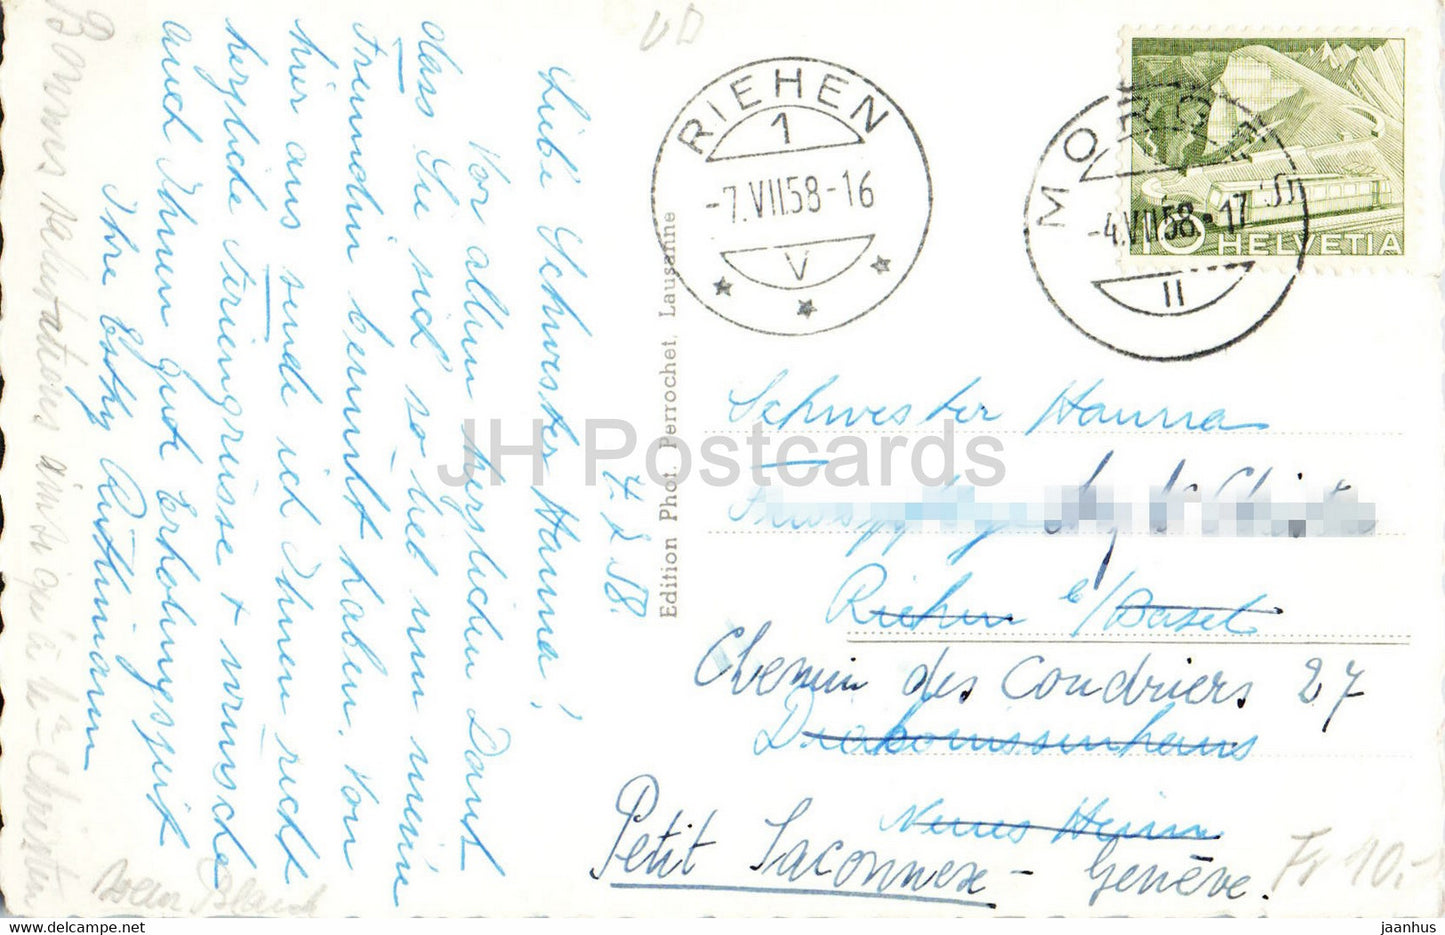 Morges - Château et place du port - château - port - voilier - 1958 - carte postale ancienne - Suisse - occasion